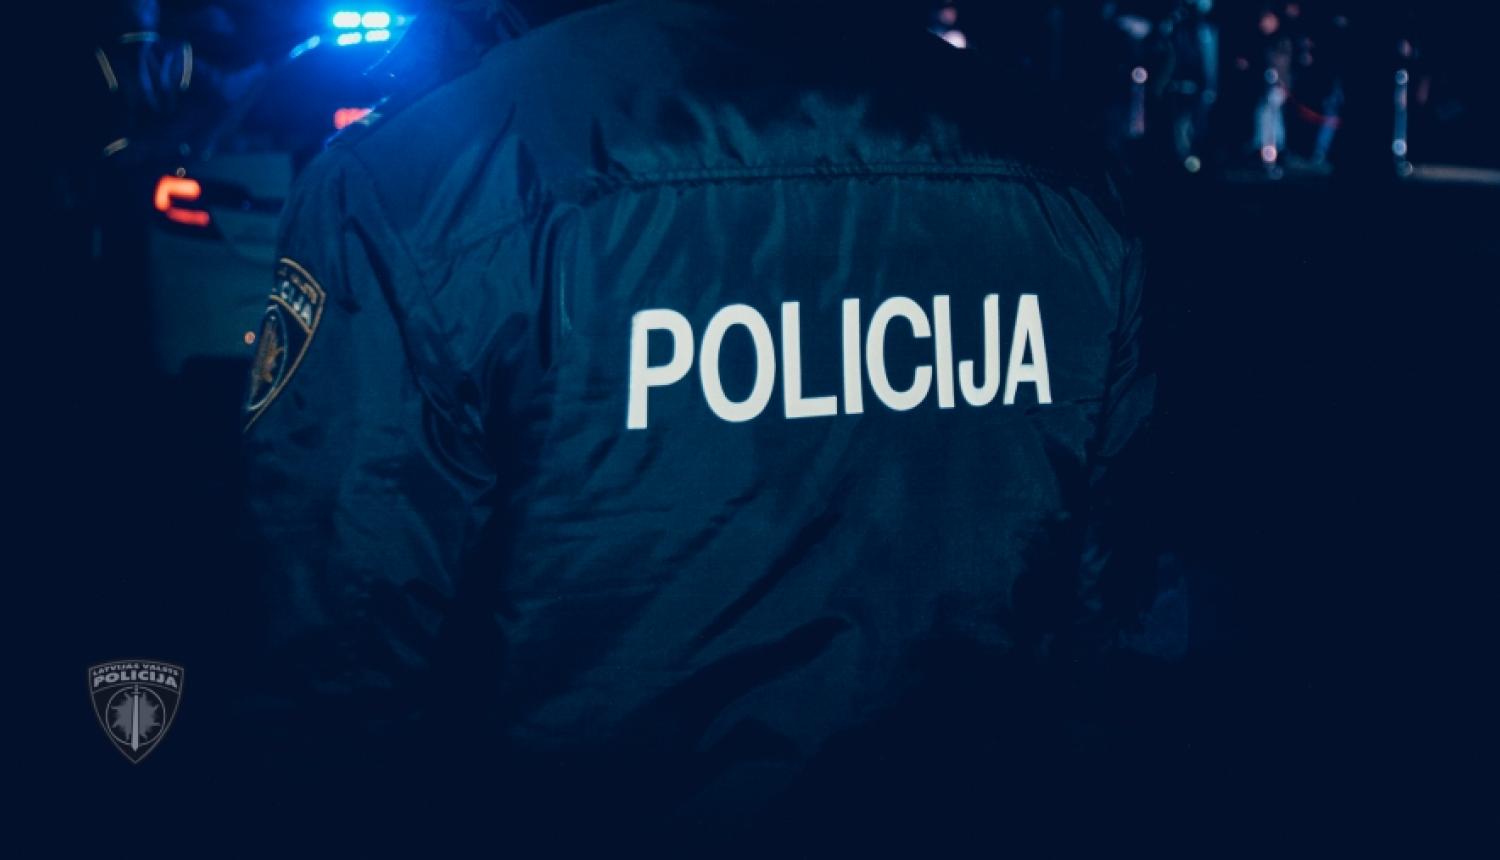 Valsts policija pabeidz izmeklēšanu kriminālprocesos par miesas bojājumu nodarīšanu